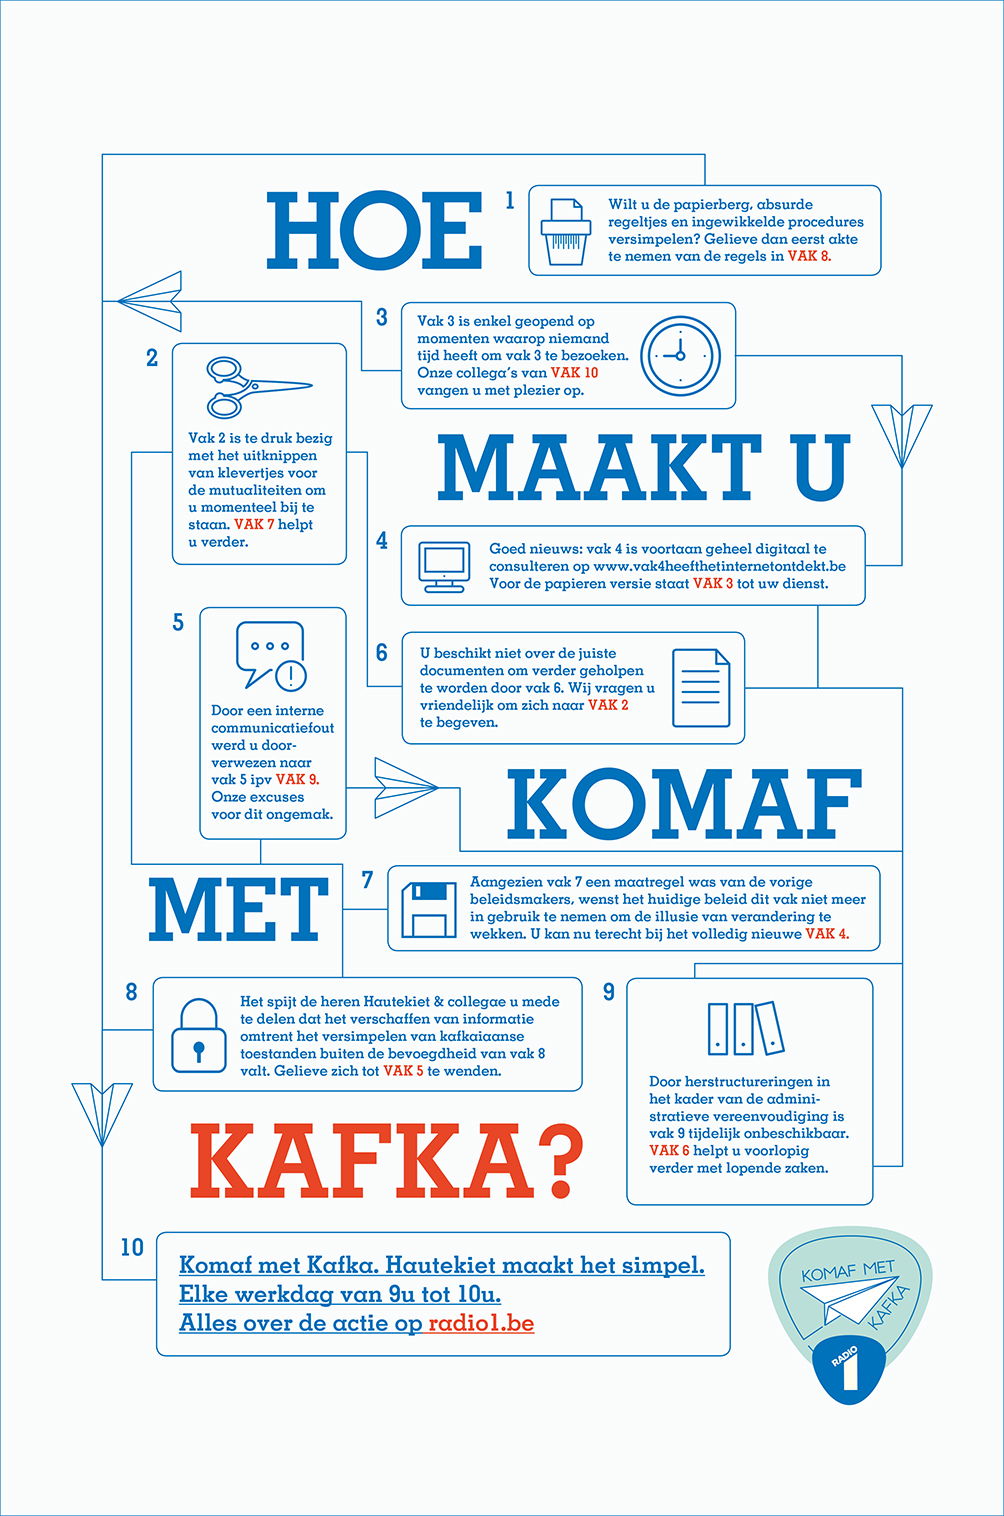 Radio 1 Komaf met Kafka
